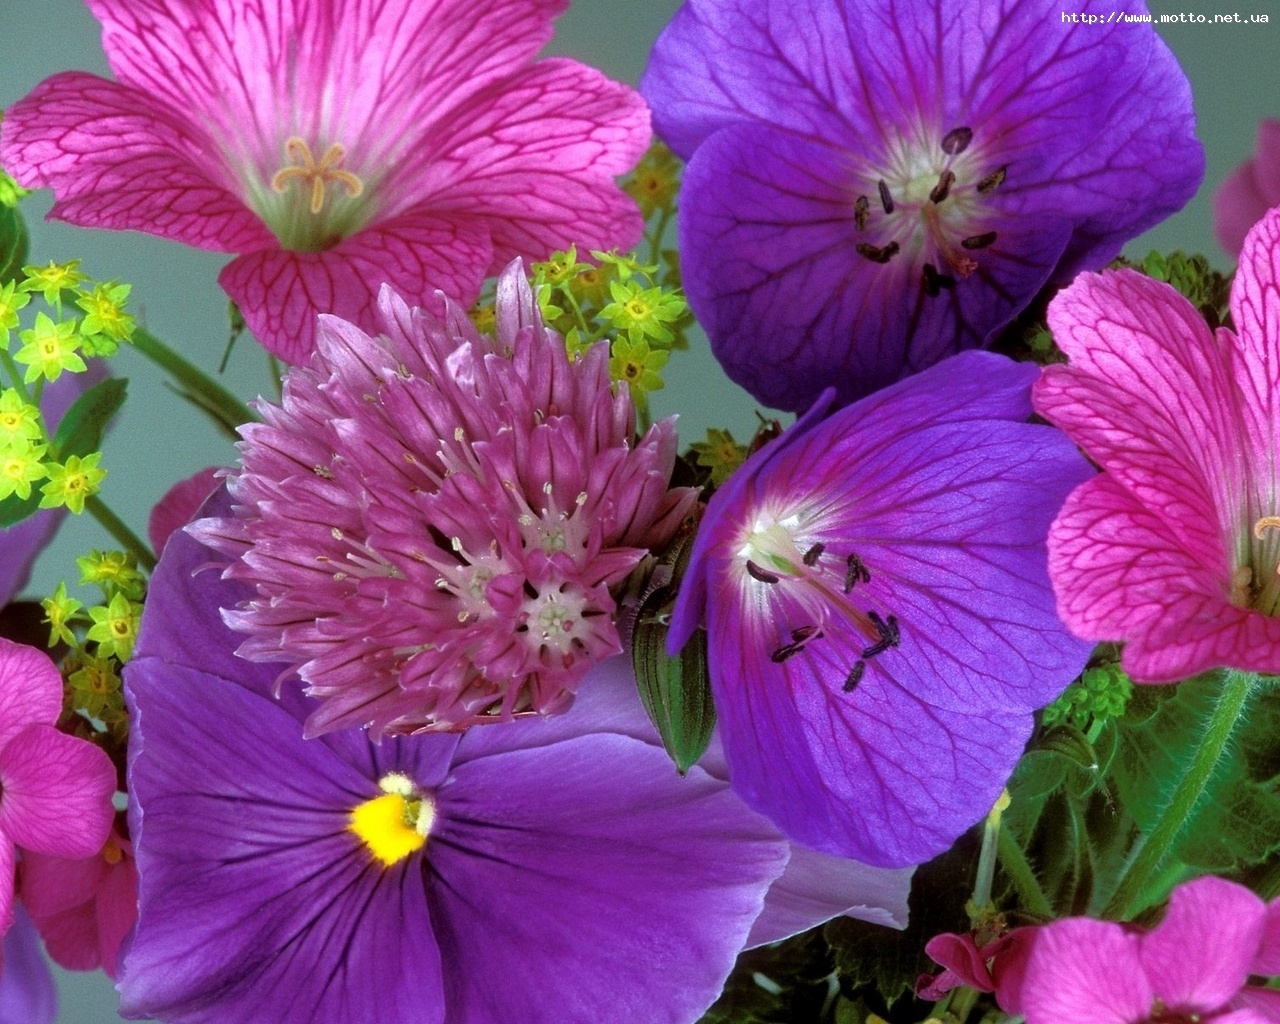 Descarga gratuita de fondo de pantalla para móvil de Plantas, Flores, Violeta.